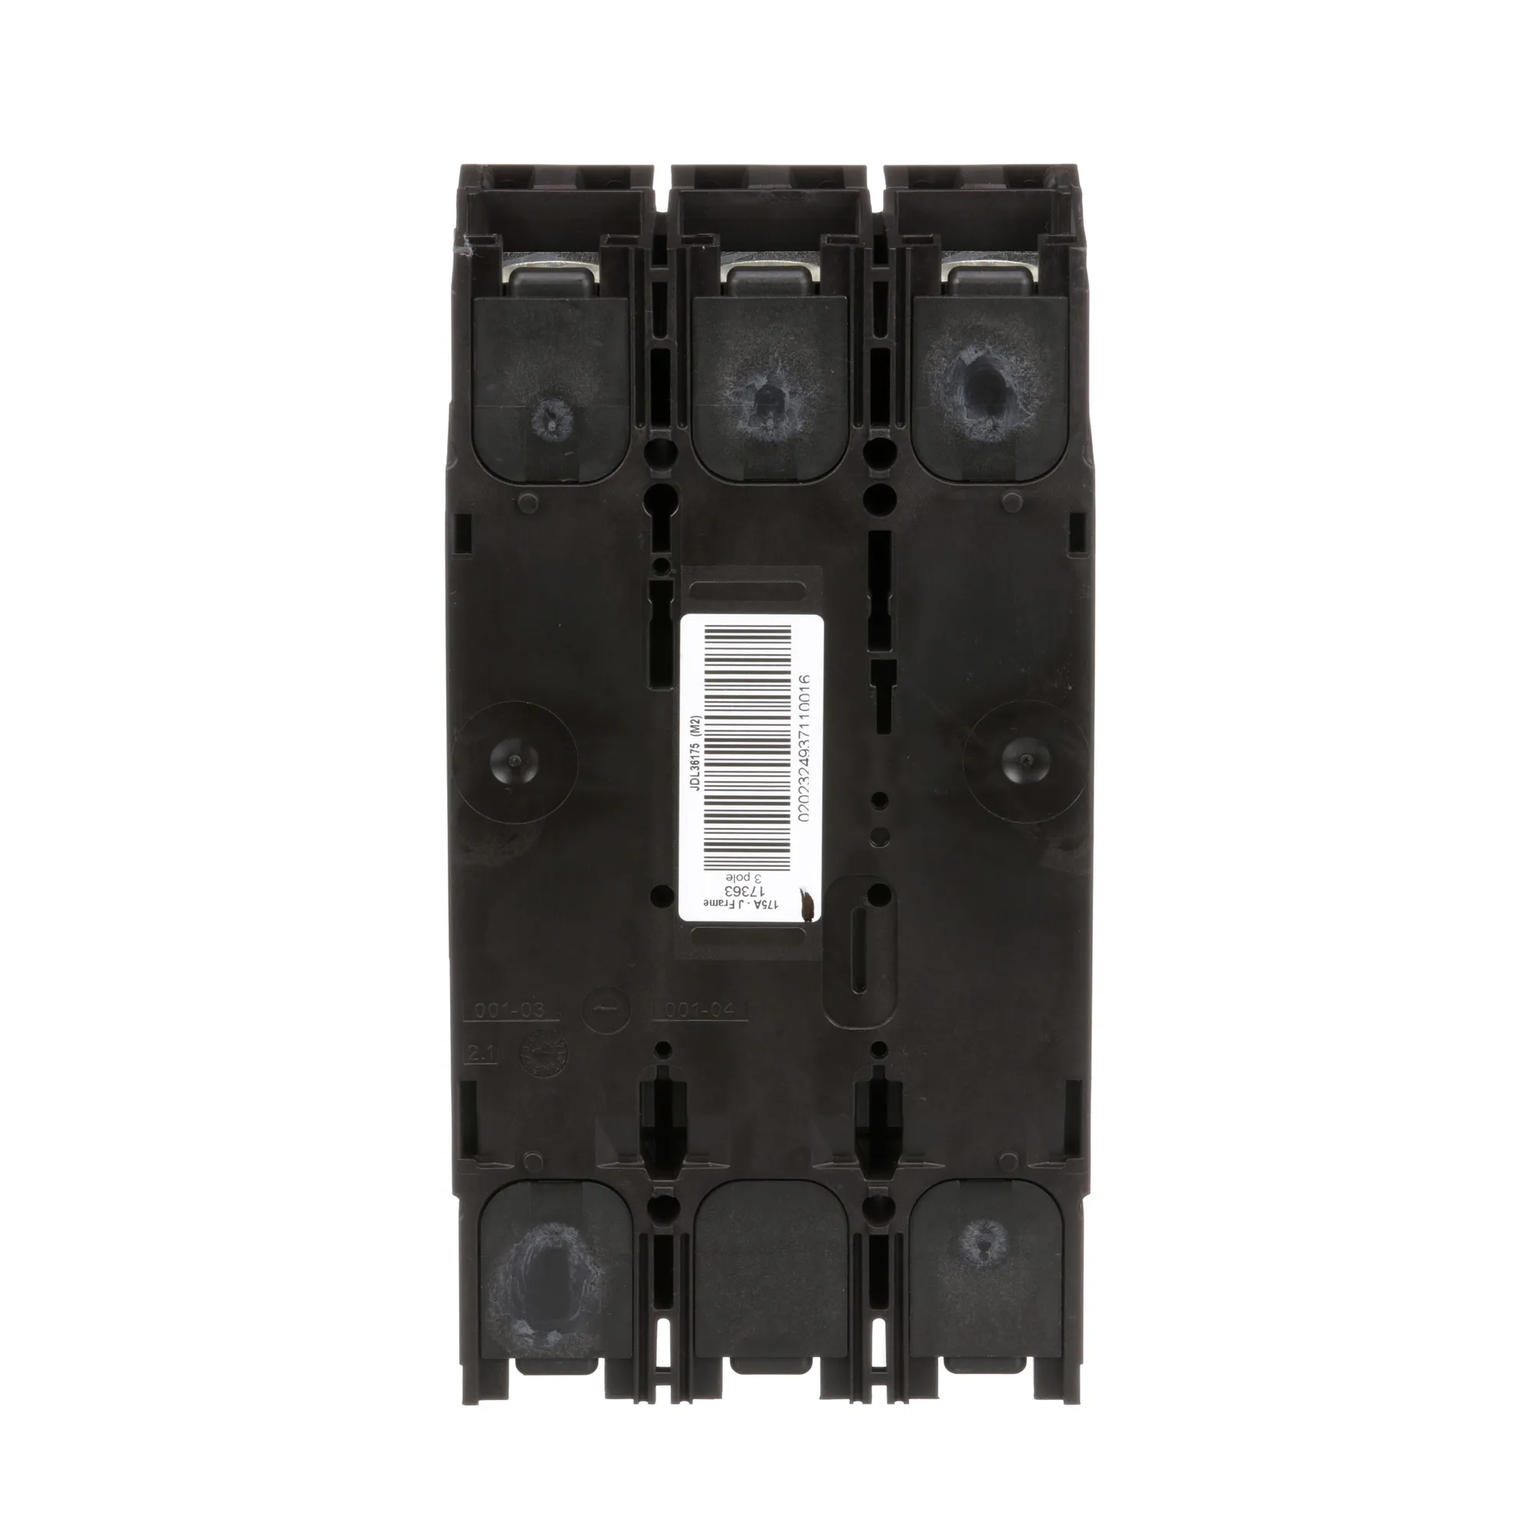 JDL36175 - Square D - Molded Case Circuit Breaker